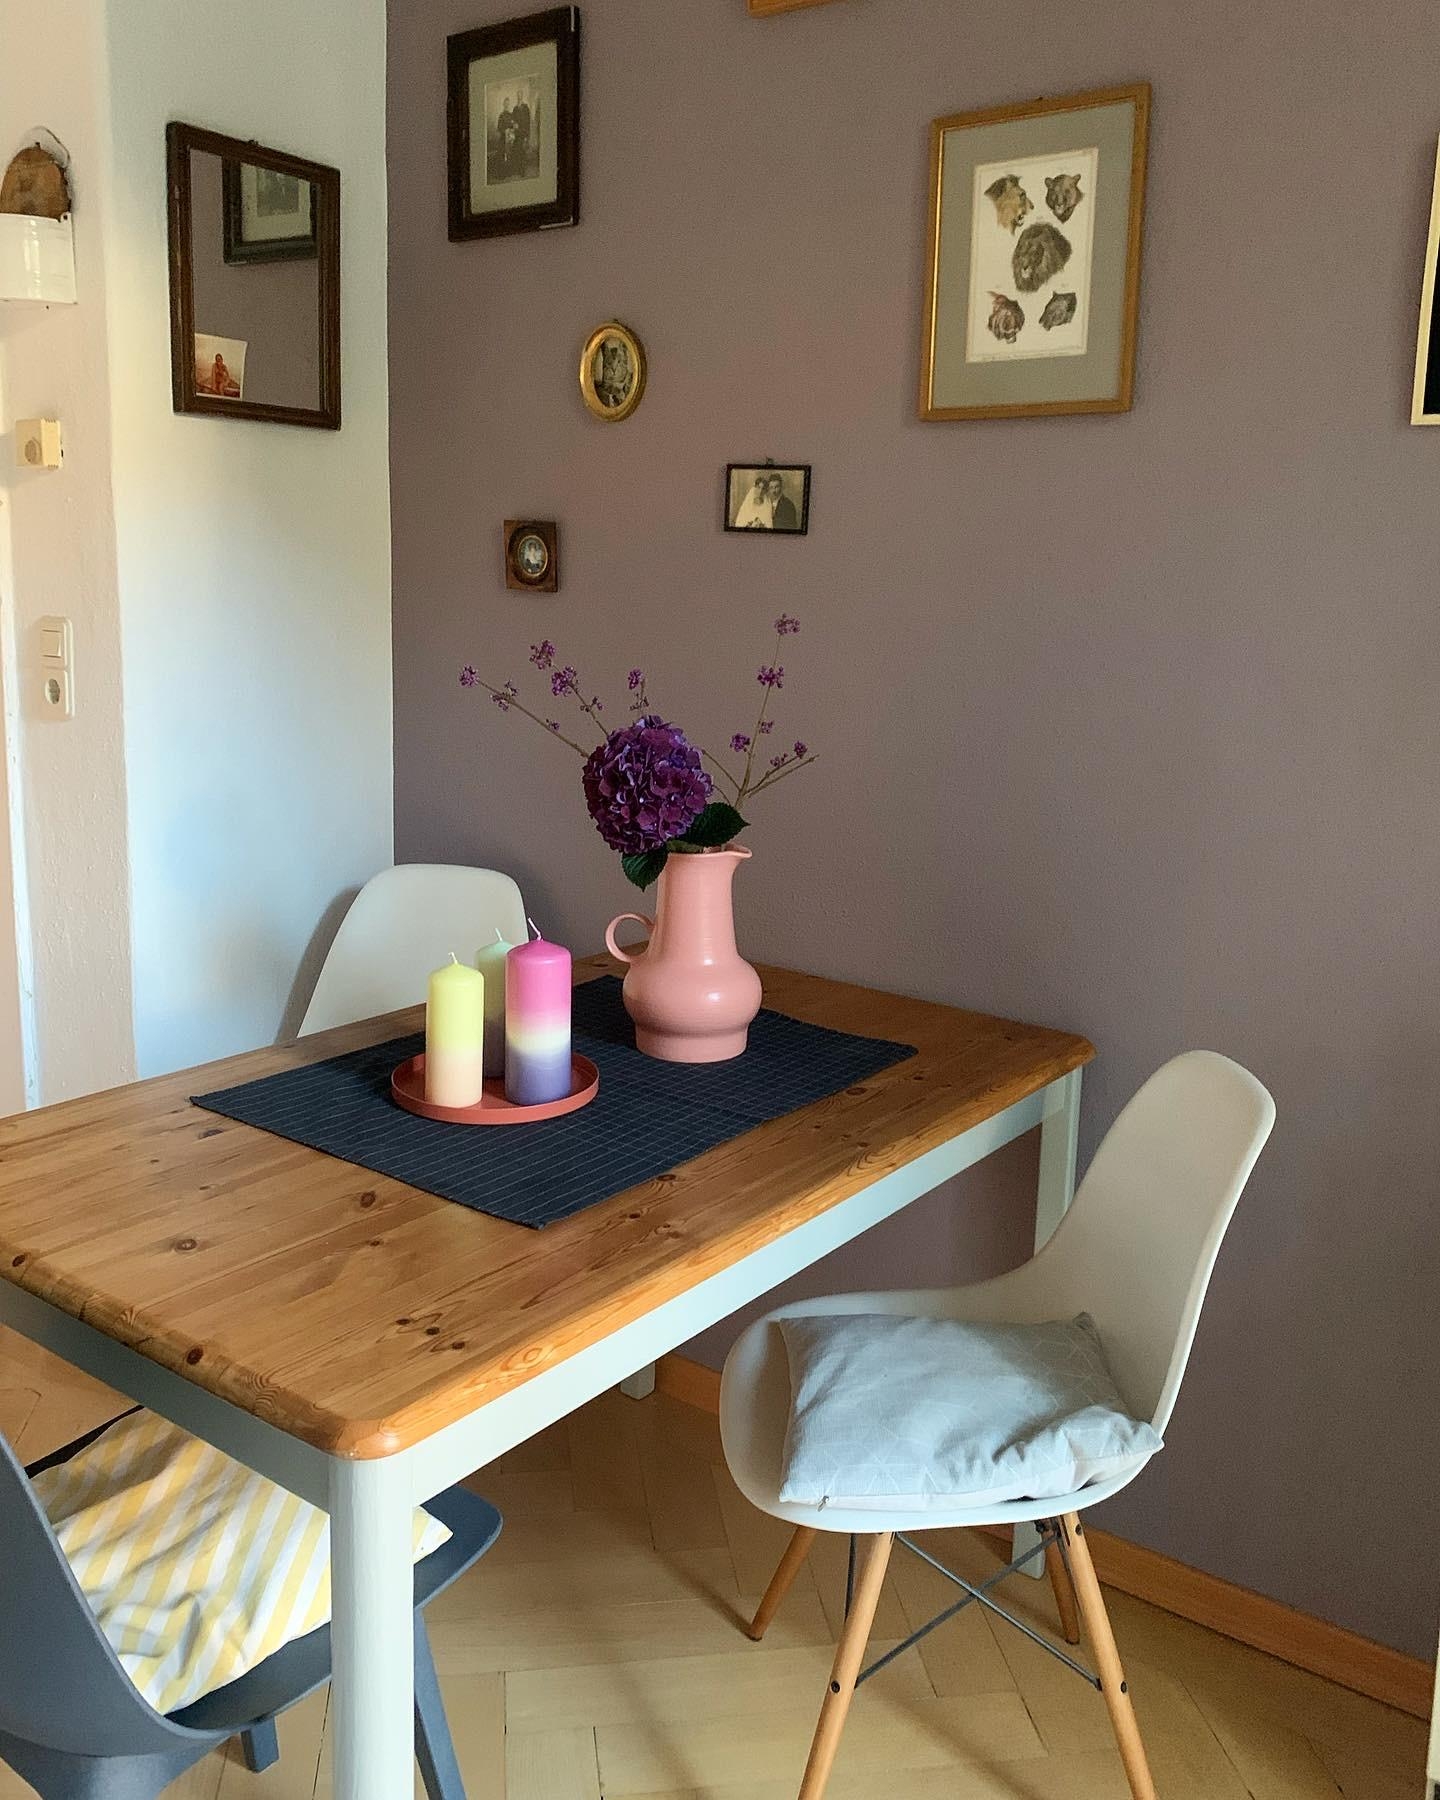 Neue Wandfarbe und gepimpter Küchentisch 😉
#renovierung #mauve #upcycling #küche #colourful #altbau #diy